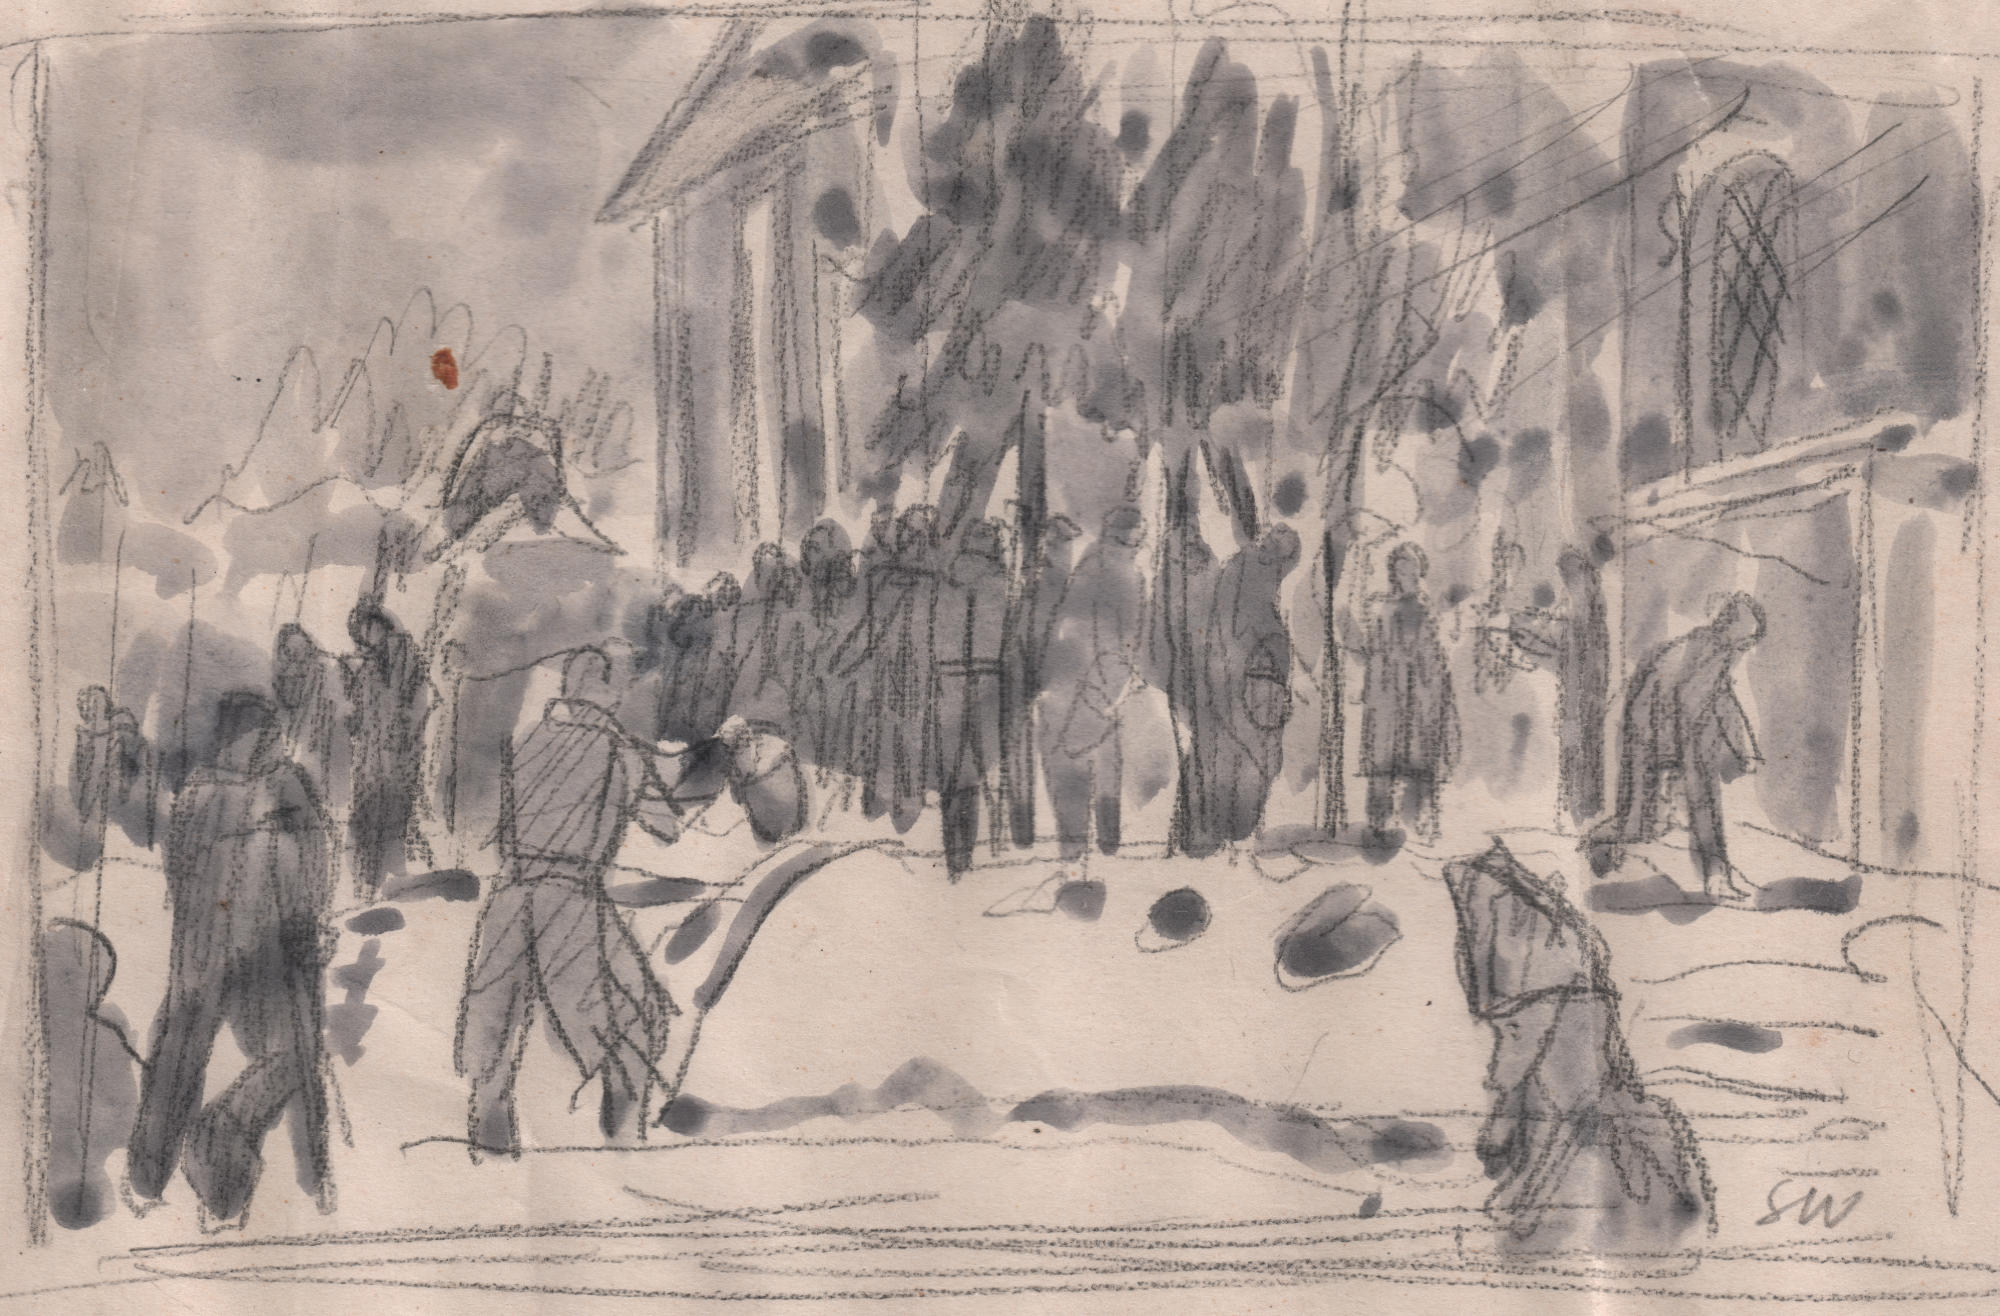 Rysunek ołówkiem, lawowany. Szkicowo narysowane postacie stojące w kolejce, przed wysokim budynkiem